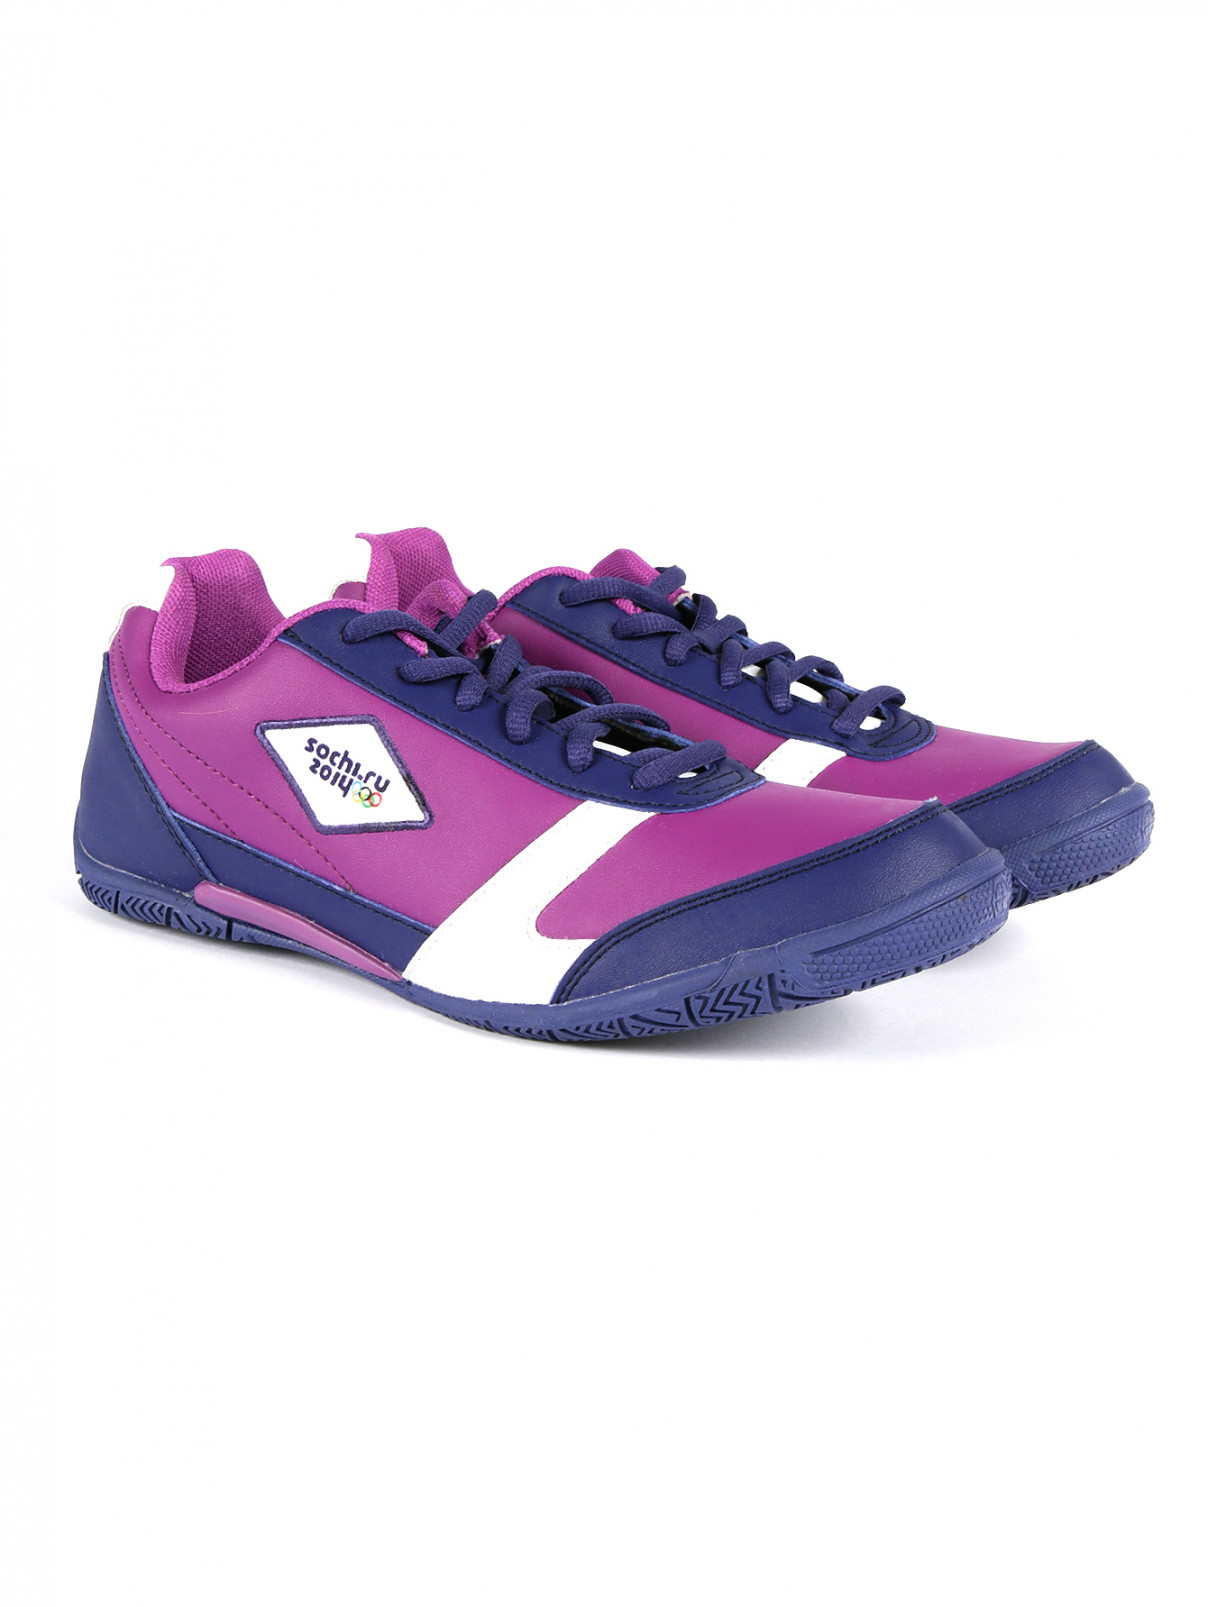 Легкие кроссовки на шнуровке Sochi 2014  –  Общий вид  – Цвет:  Фиолетовый